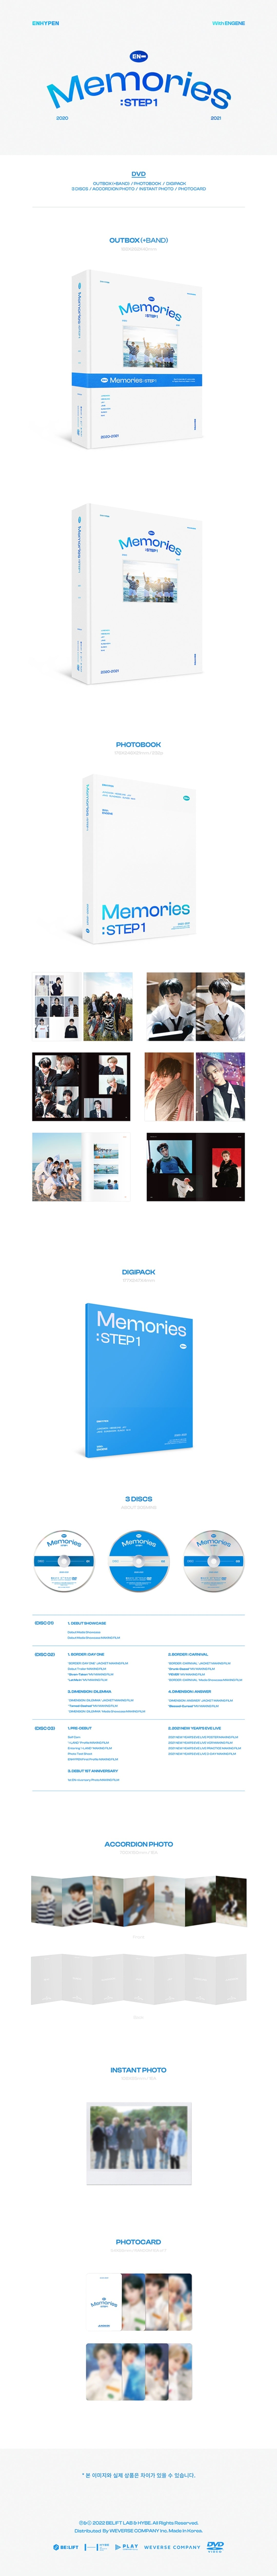 ENHYPEN - Pieces of Memories & Memories: Step 1 DVD SET